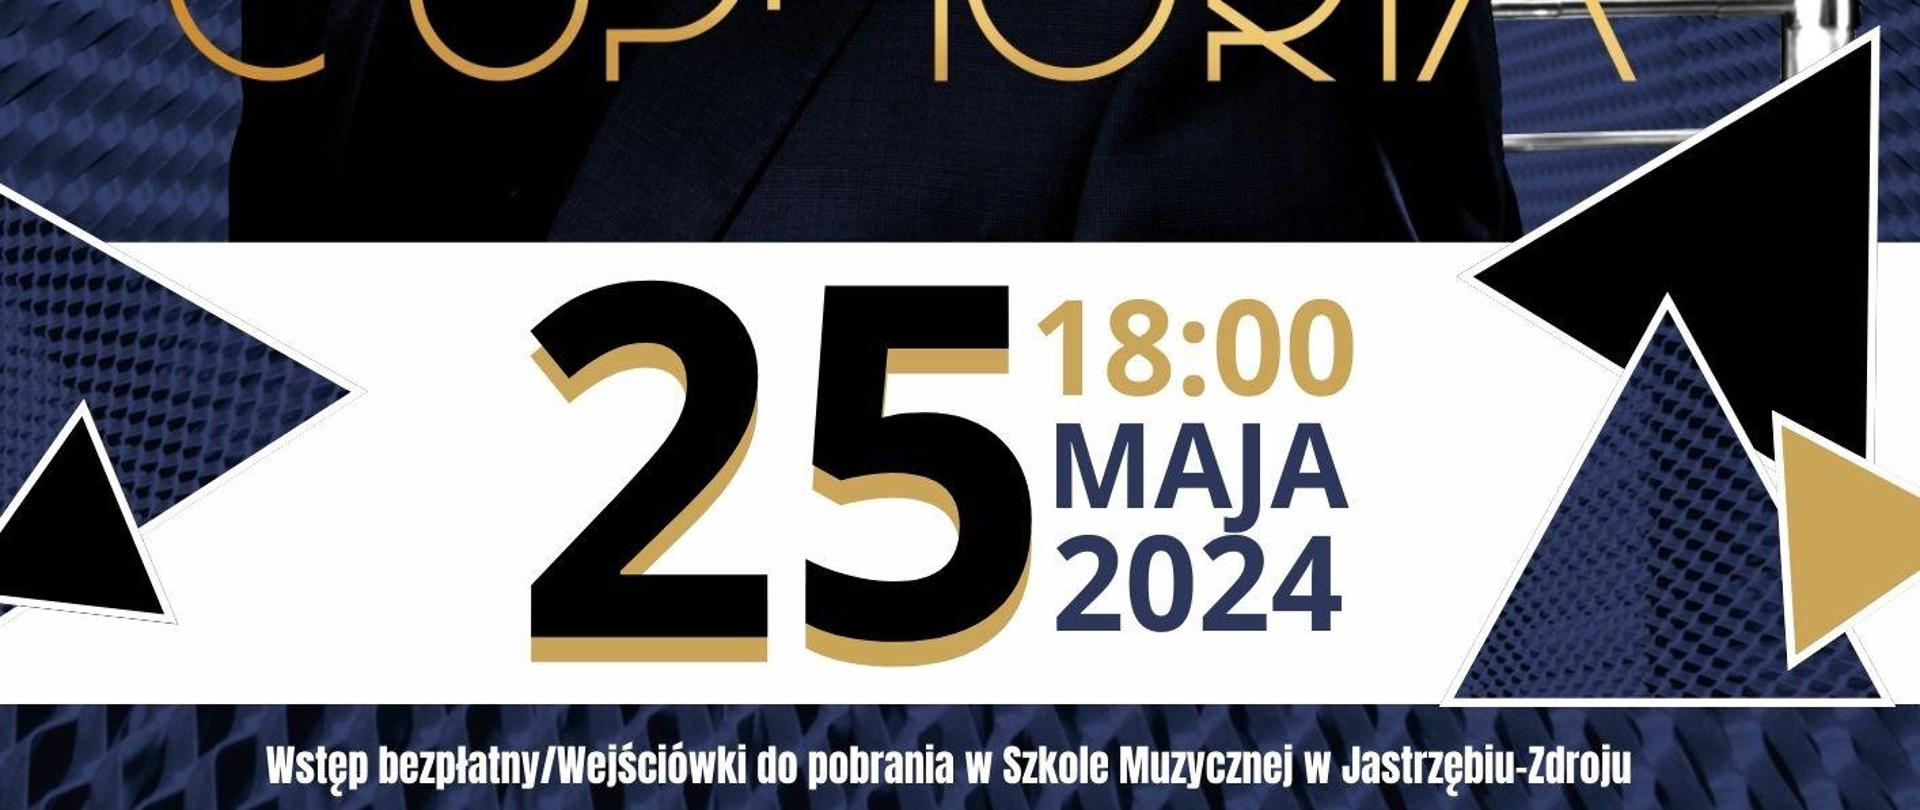 Plakat informacyjny dotyczący koncertu Euphoria odbywającego się w dniu 25.05.2024 w godz.18.00.